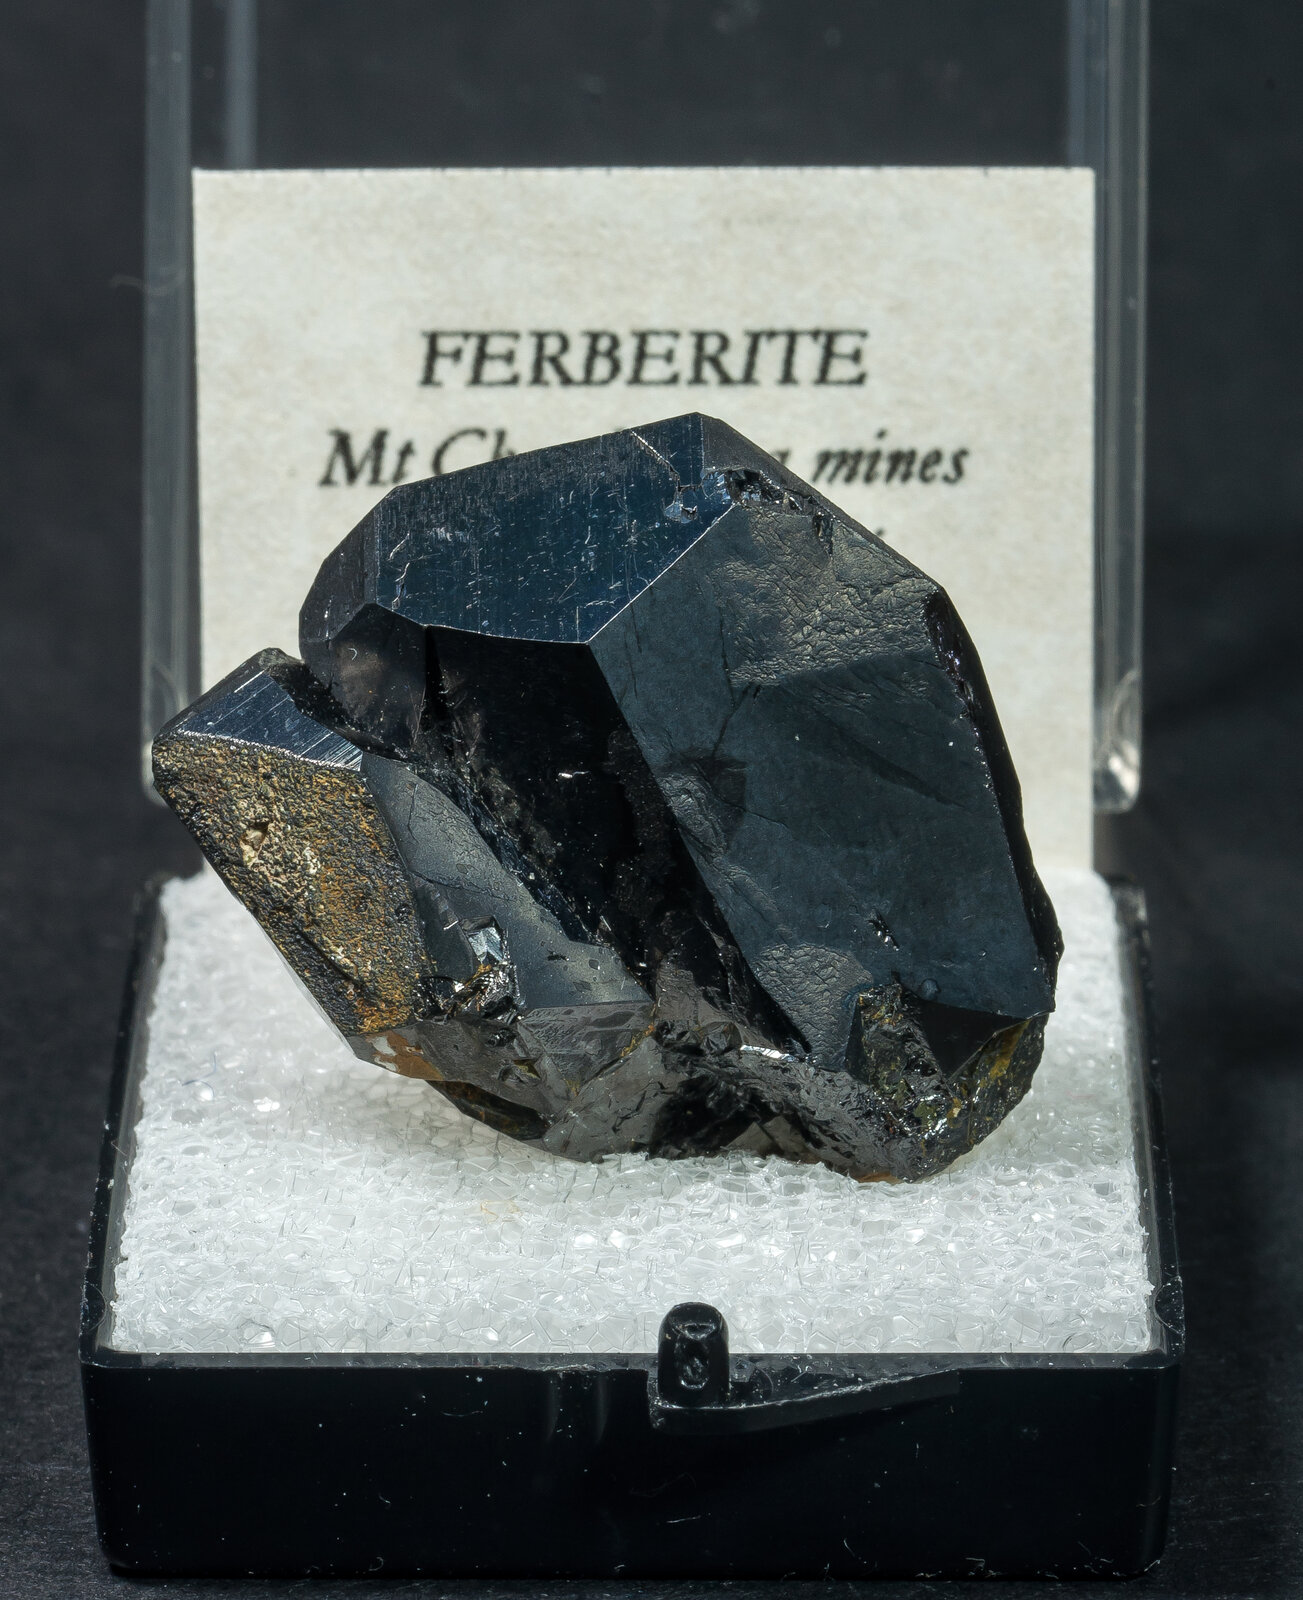 specimens/s_imagesAN9/Ferberite-TEL64AN9f1.jpg